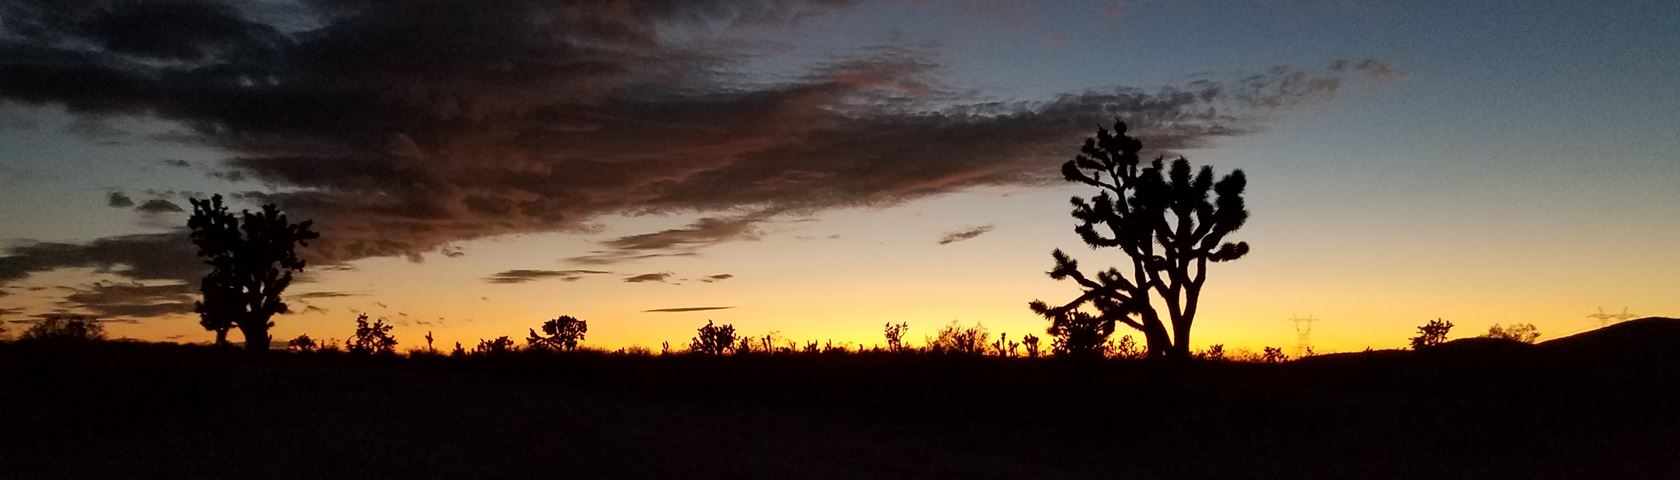 The Desert Sunset